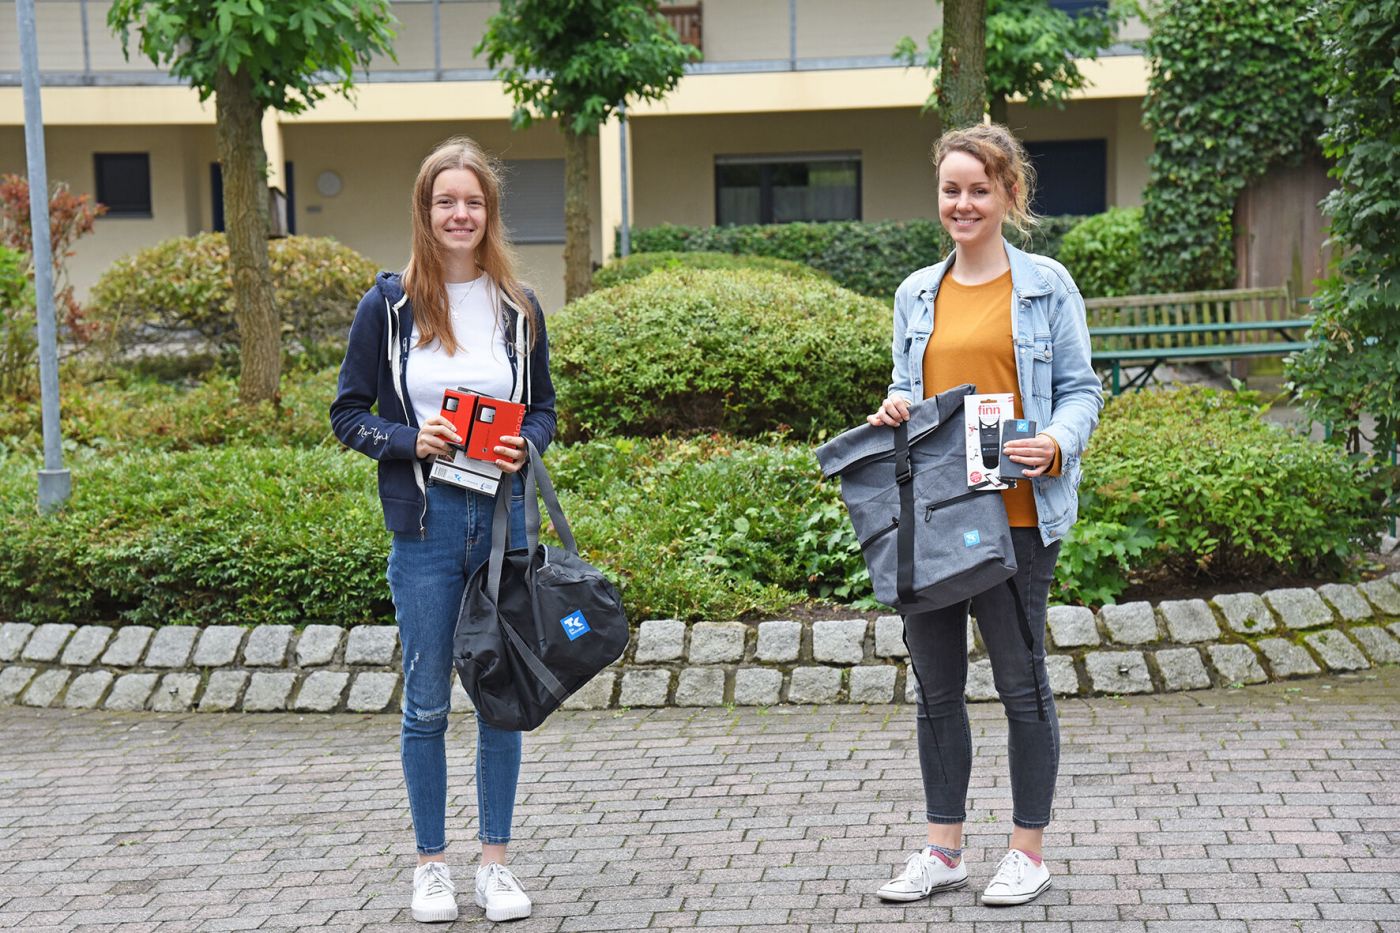 Celine Flemming (l.) und Sabrina Heiler (r.) sind die beiden Gewinnerin der August-Verlosung im Wettbewerb „FHahr Rad! & FH läuft!“. (Foto: FH Münster/Stefanie Gosejohann)